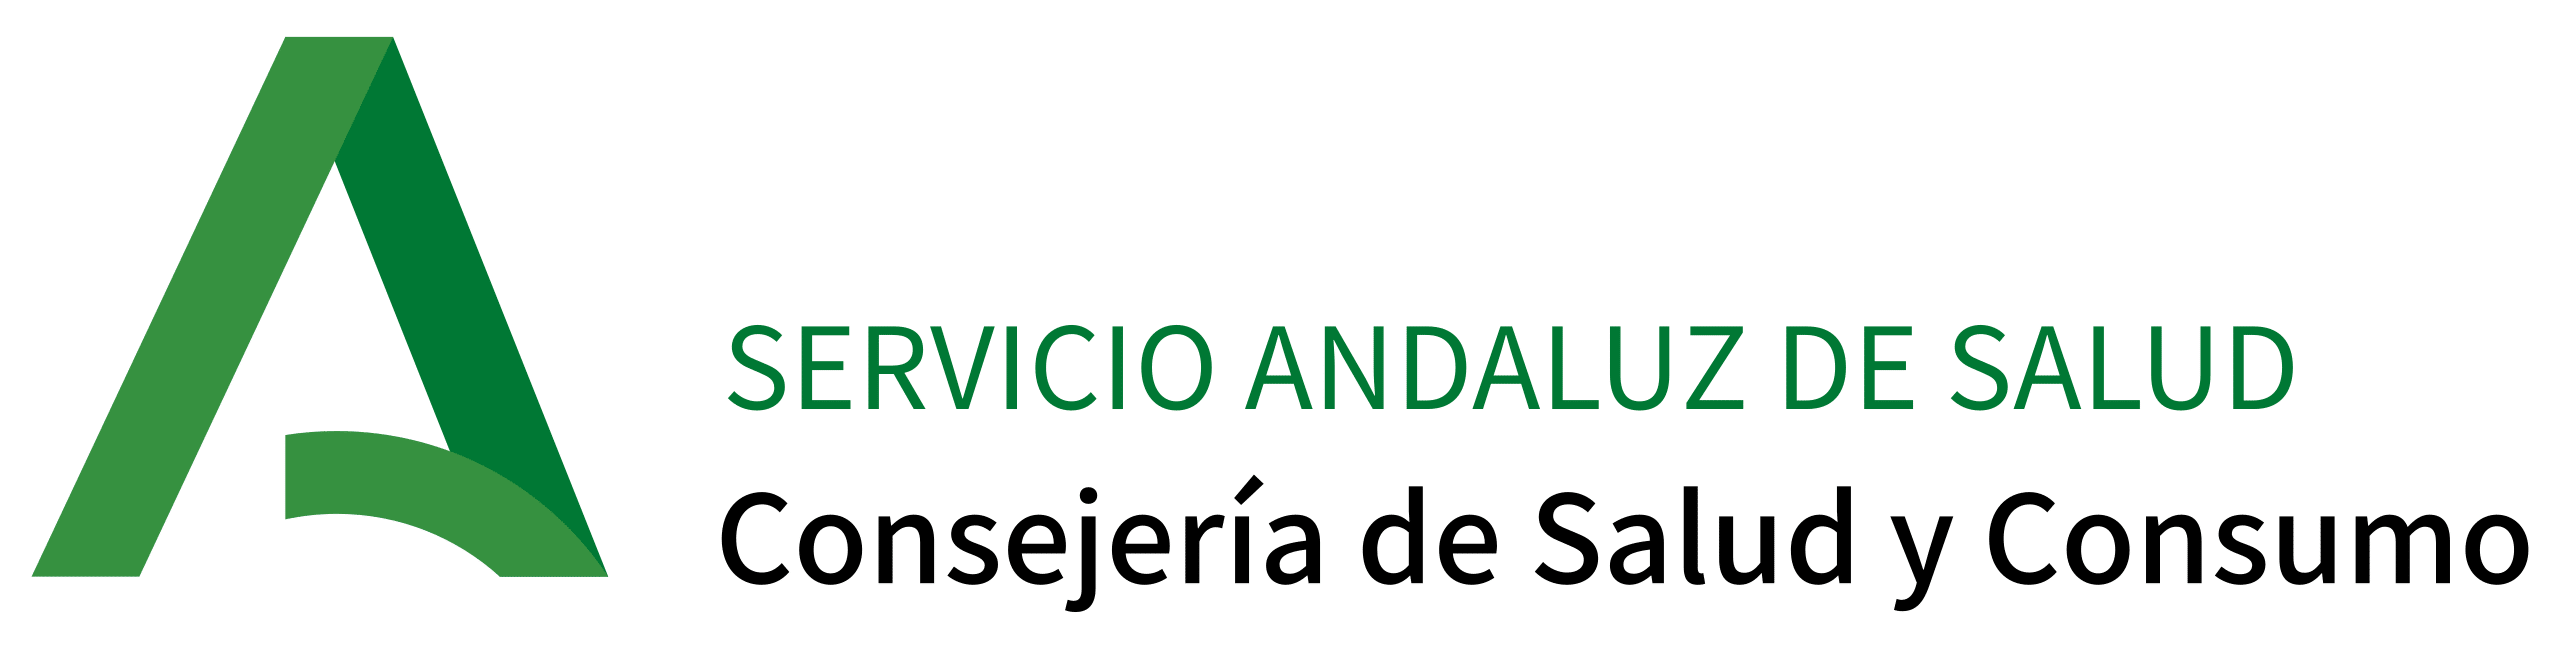 Logotipo_del_Servicio_Andaluz_de_Salud.svg